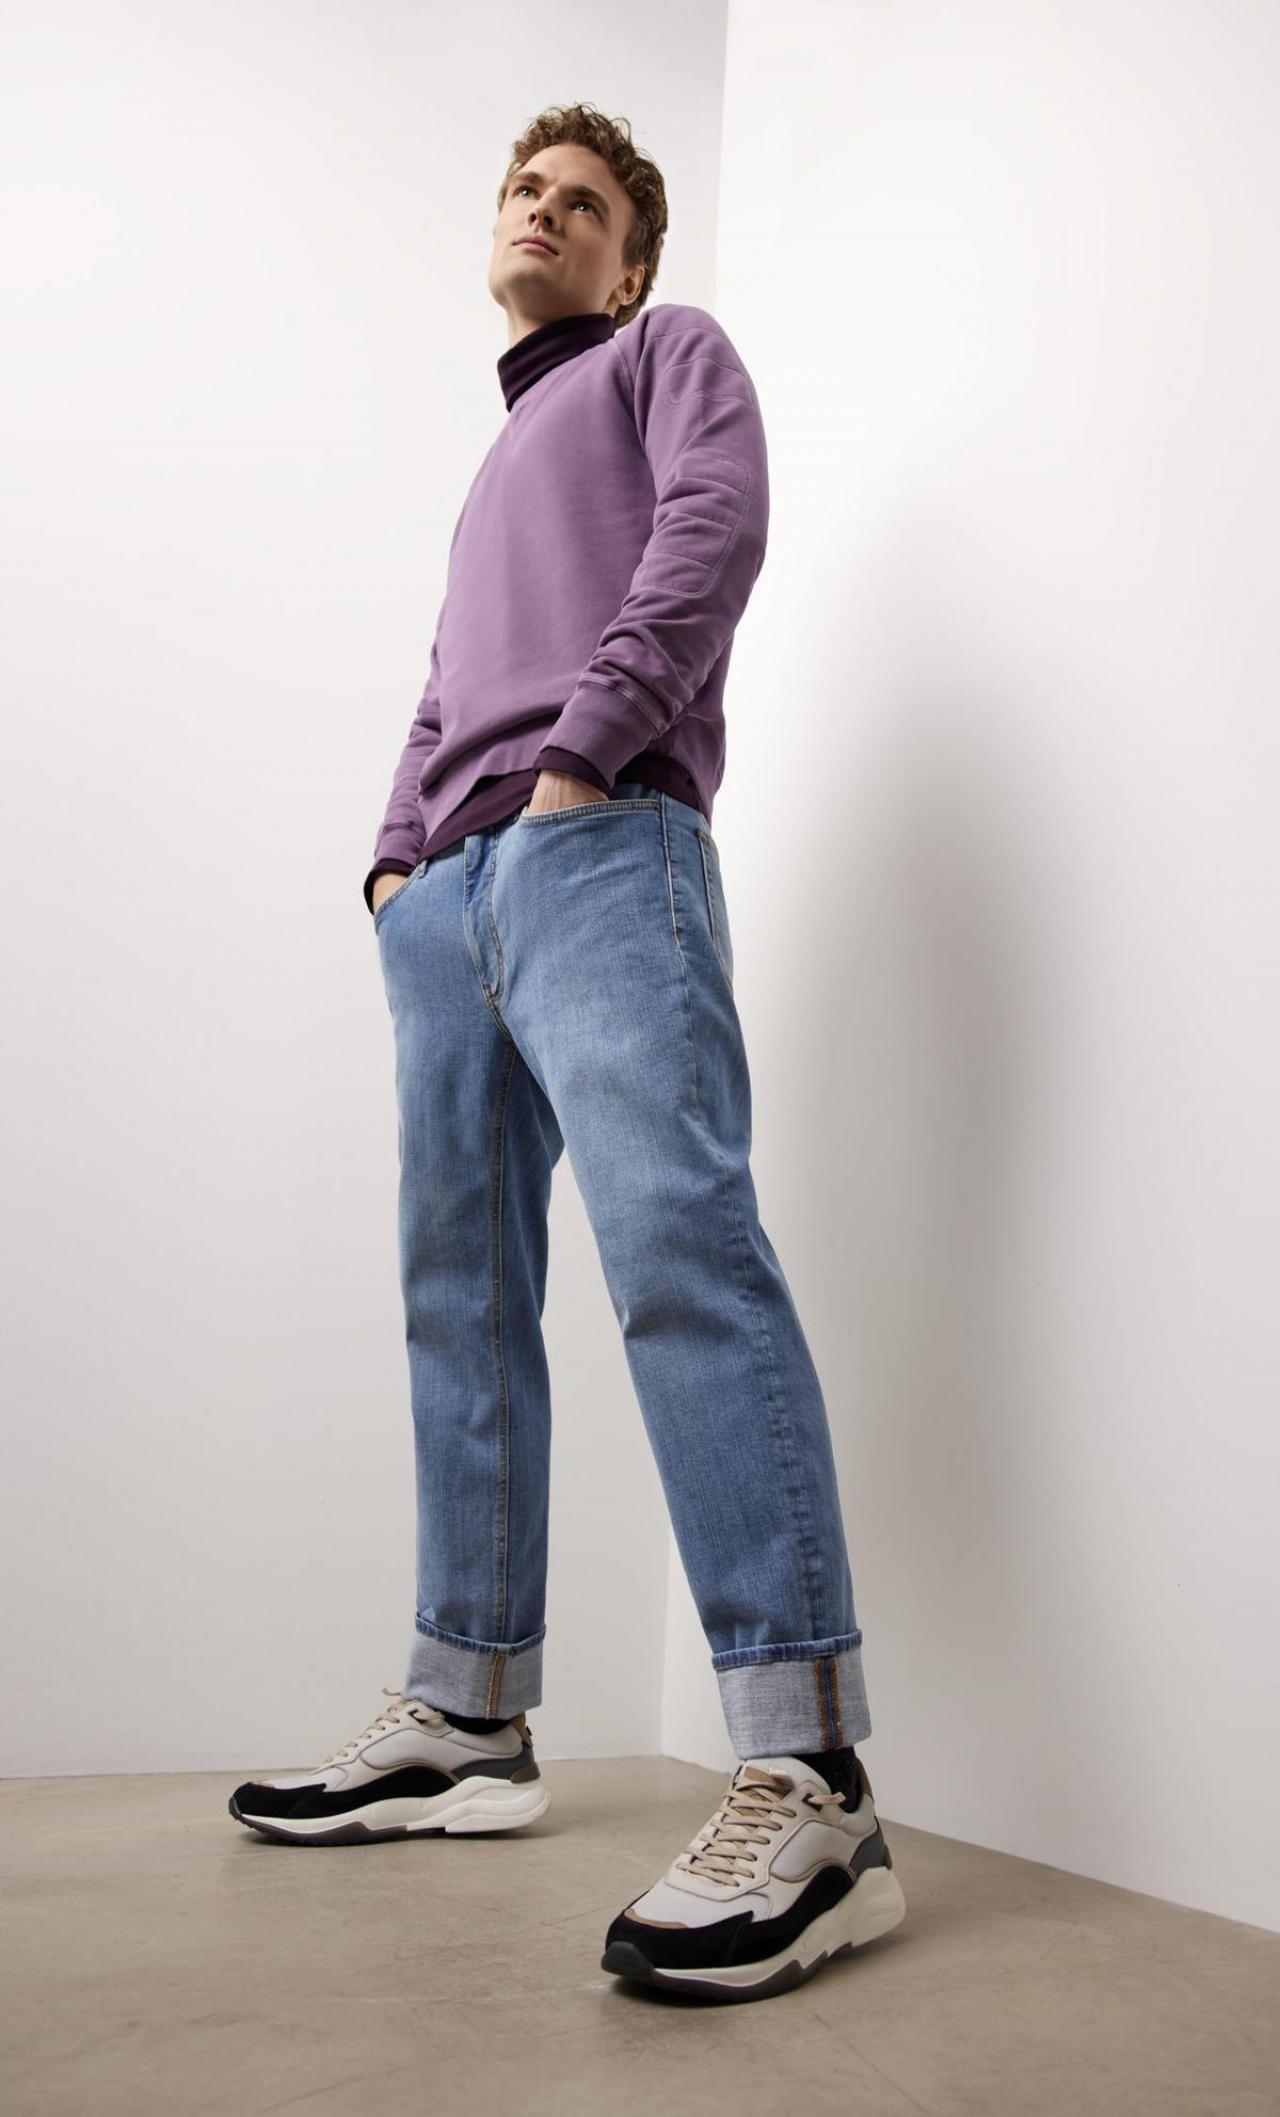 Duurzame jeans (119,95 euro), uit de Blue Planet-collectie van Brax.